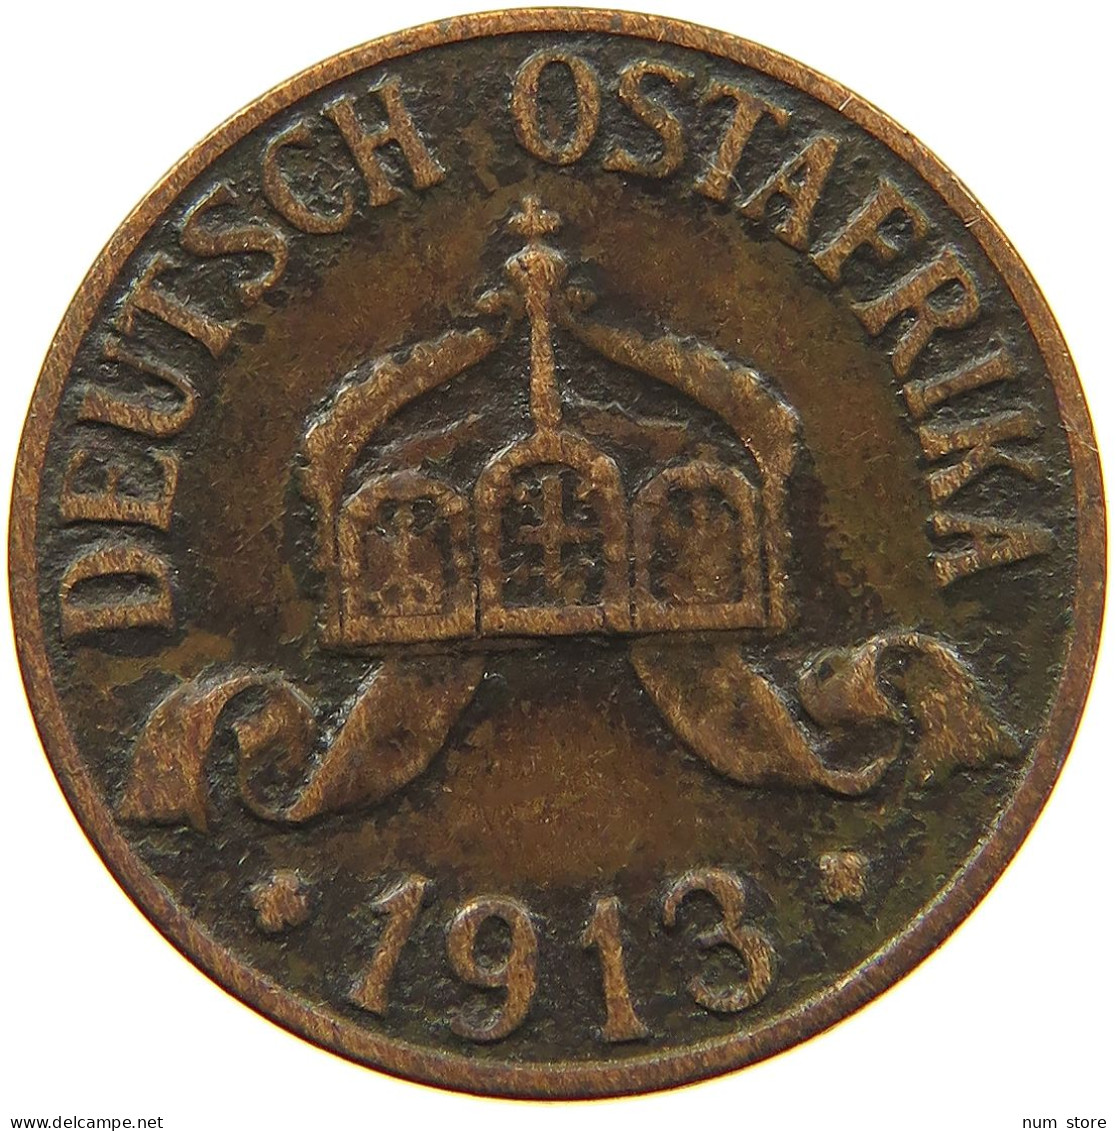 DEUTSCH OSTAFRIKA HELLER 1913 A  #MA 098502 - German East Africa